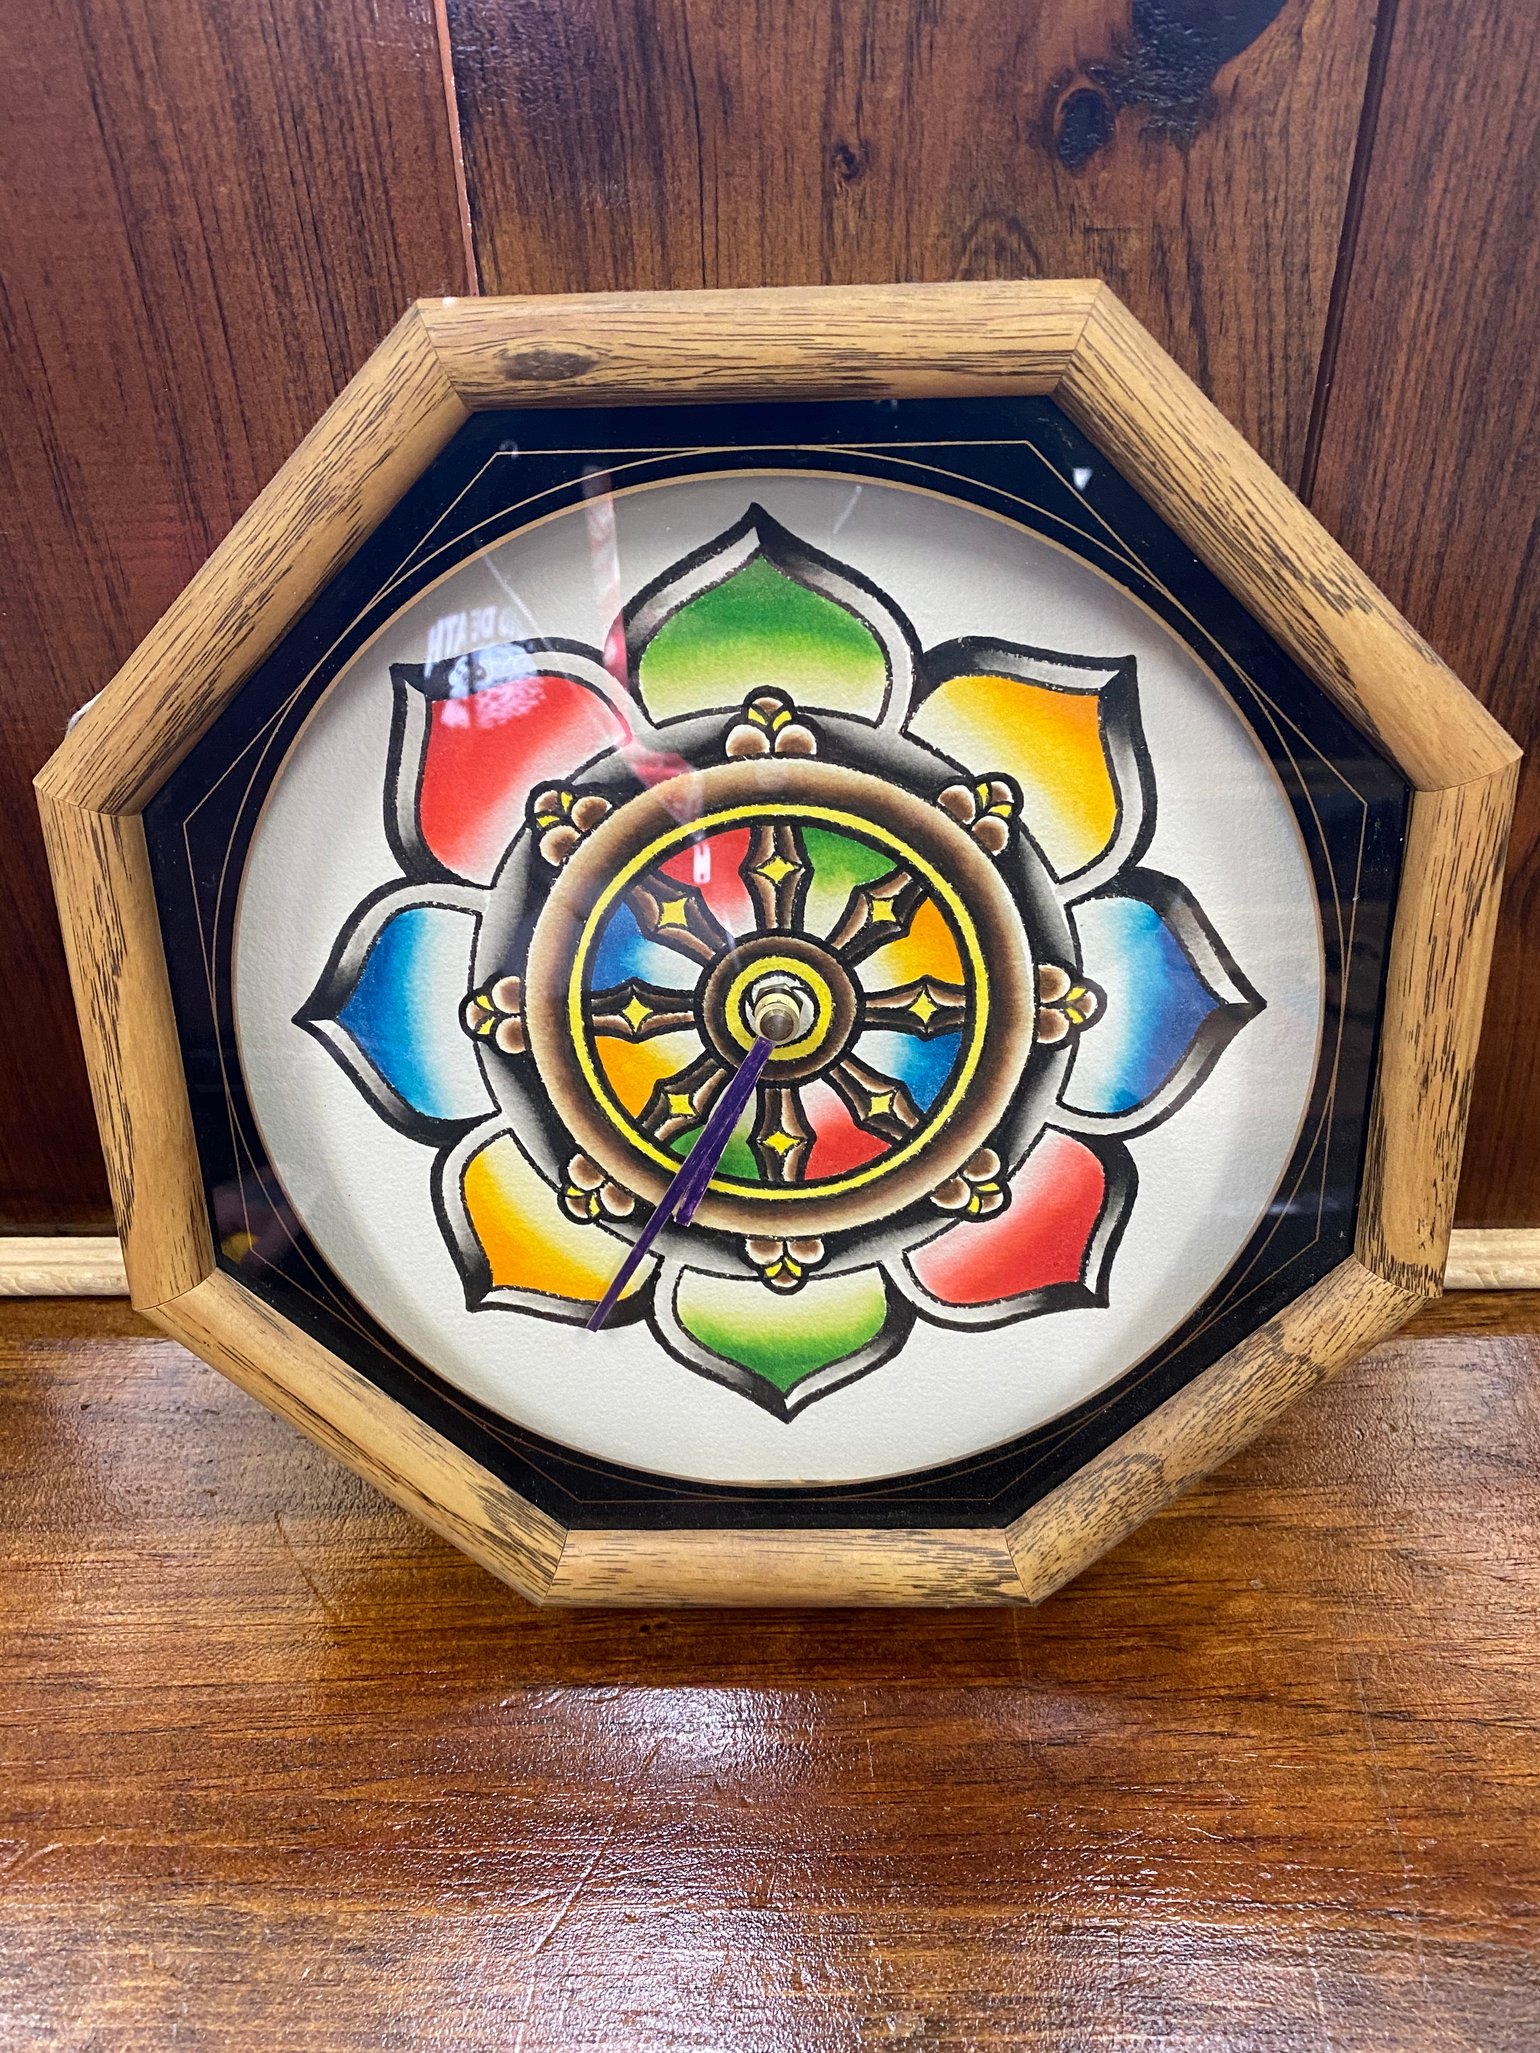 Image of Dharma Wheel custom clock by Ed Bell